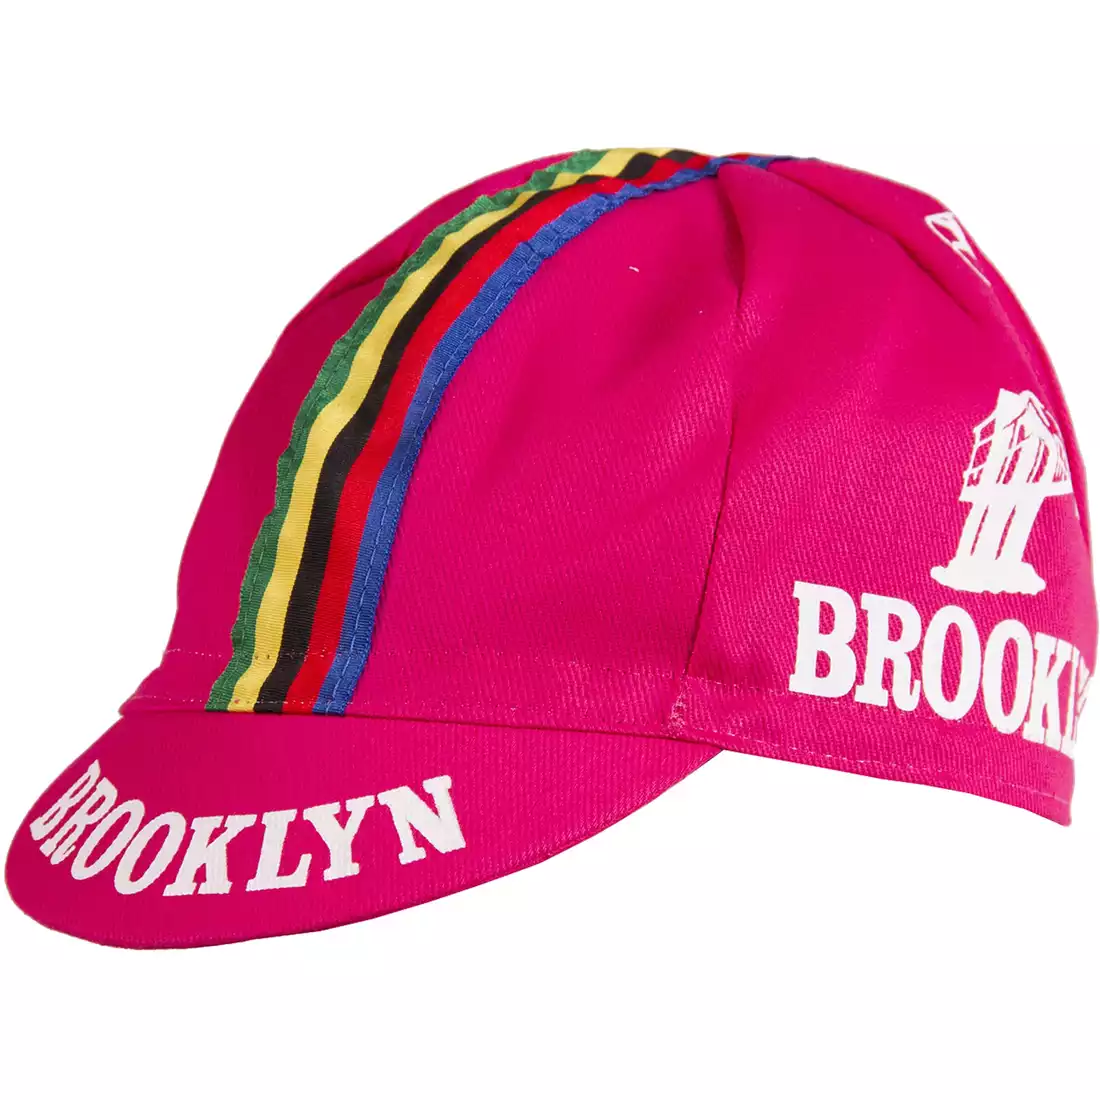 GIORDANA SS18 czapeczka kolarska - Brooklyn -  Pink w/ Stripe tape  GI-S6-COCA-BROK-PINK one size